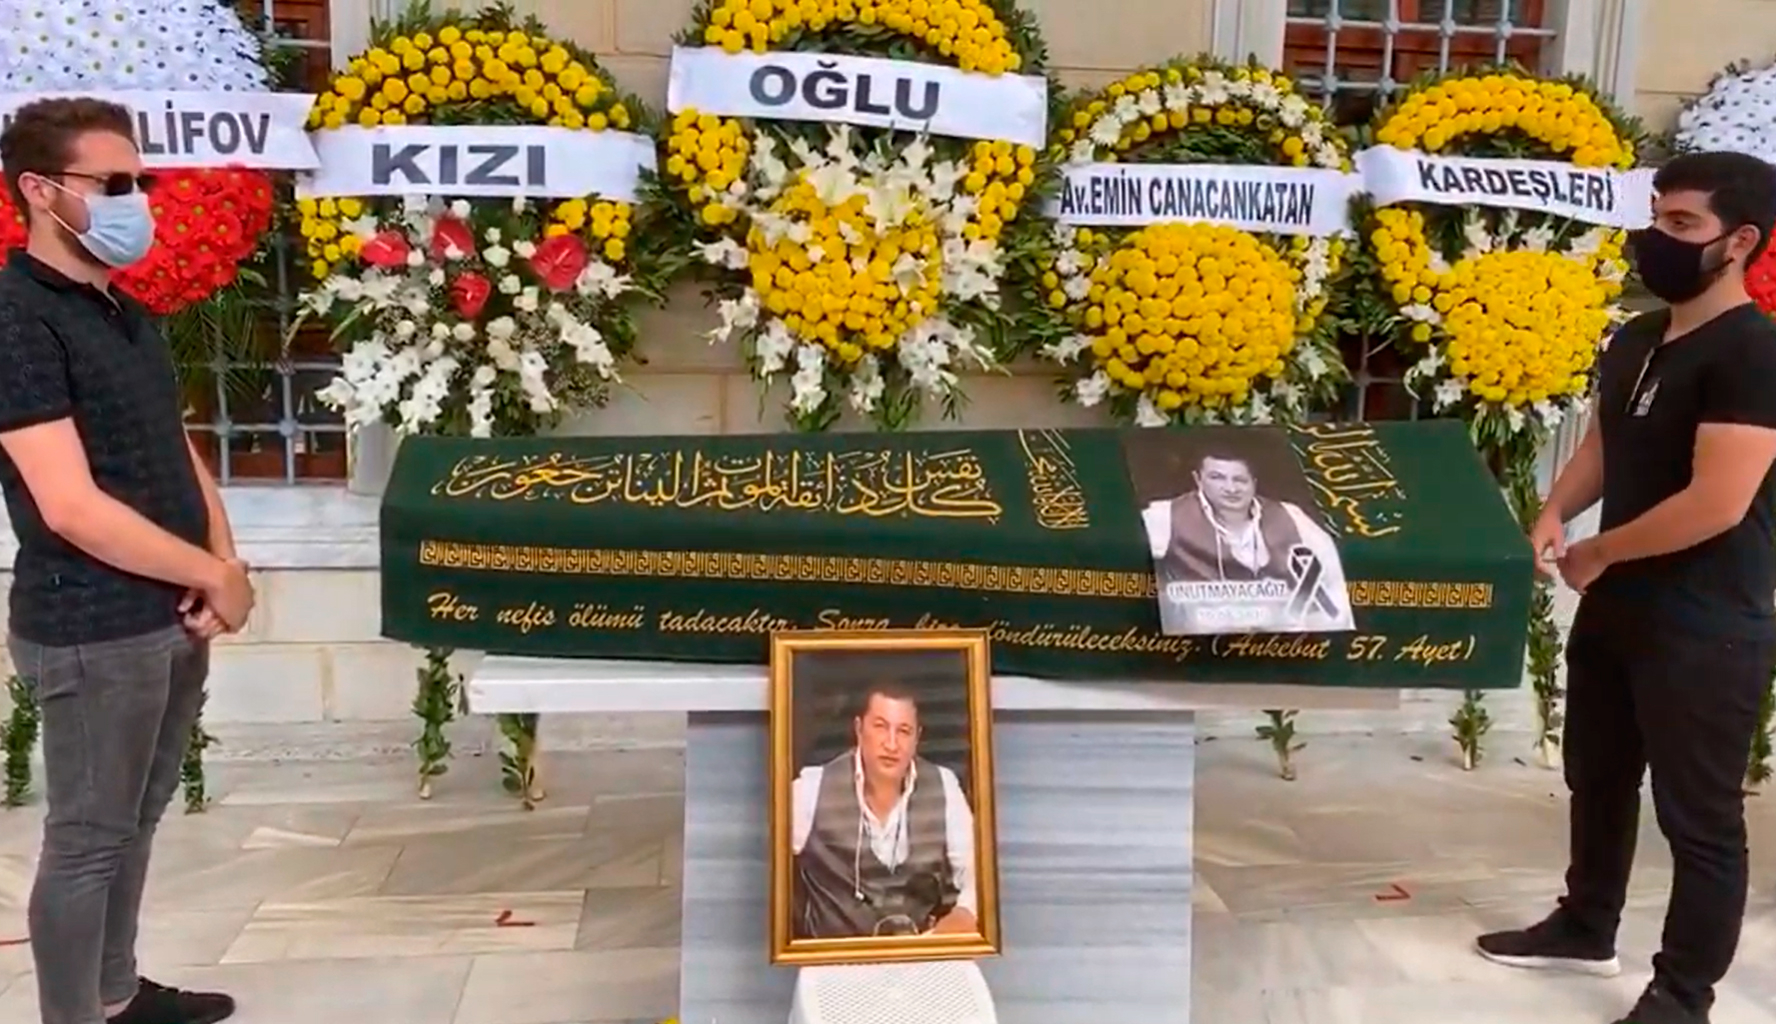 "Лоту Гули" похоронен в Стамбуле - ВИДЕО/ОБНОВЛЕНО